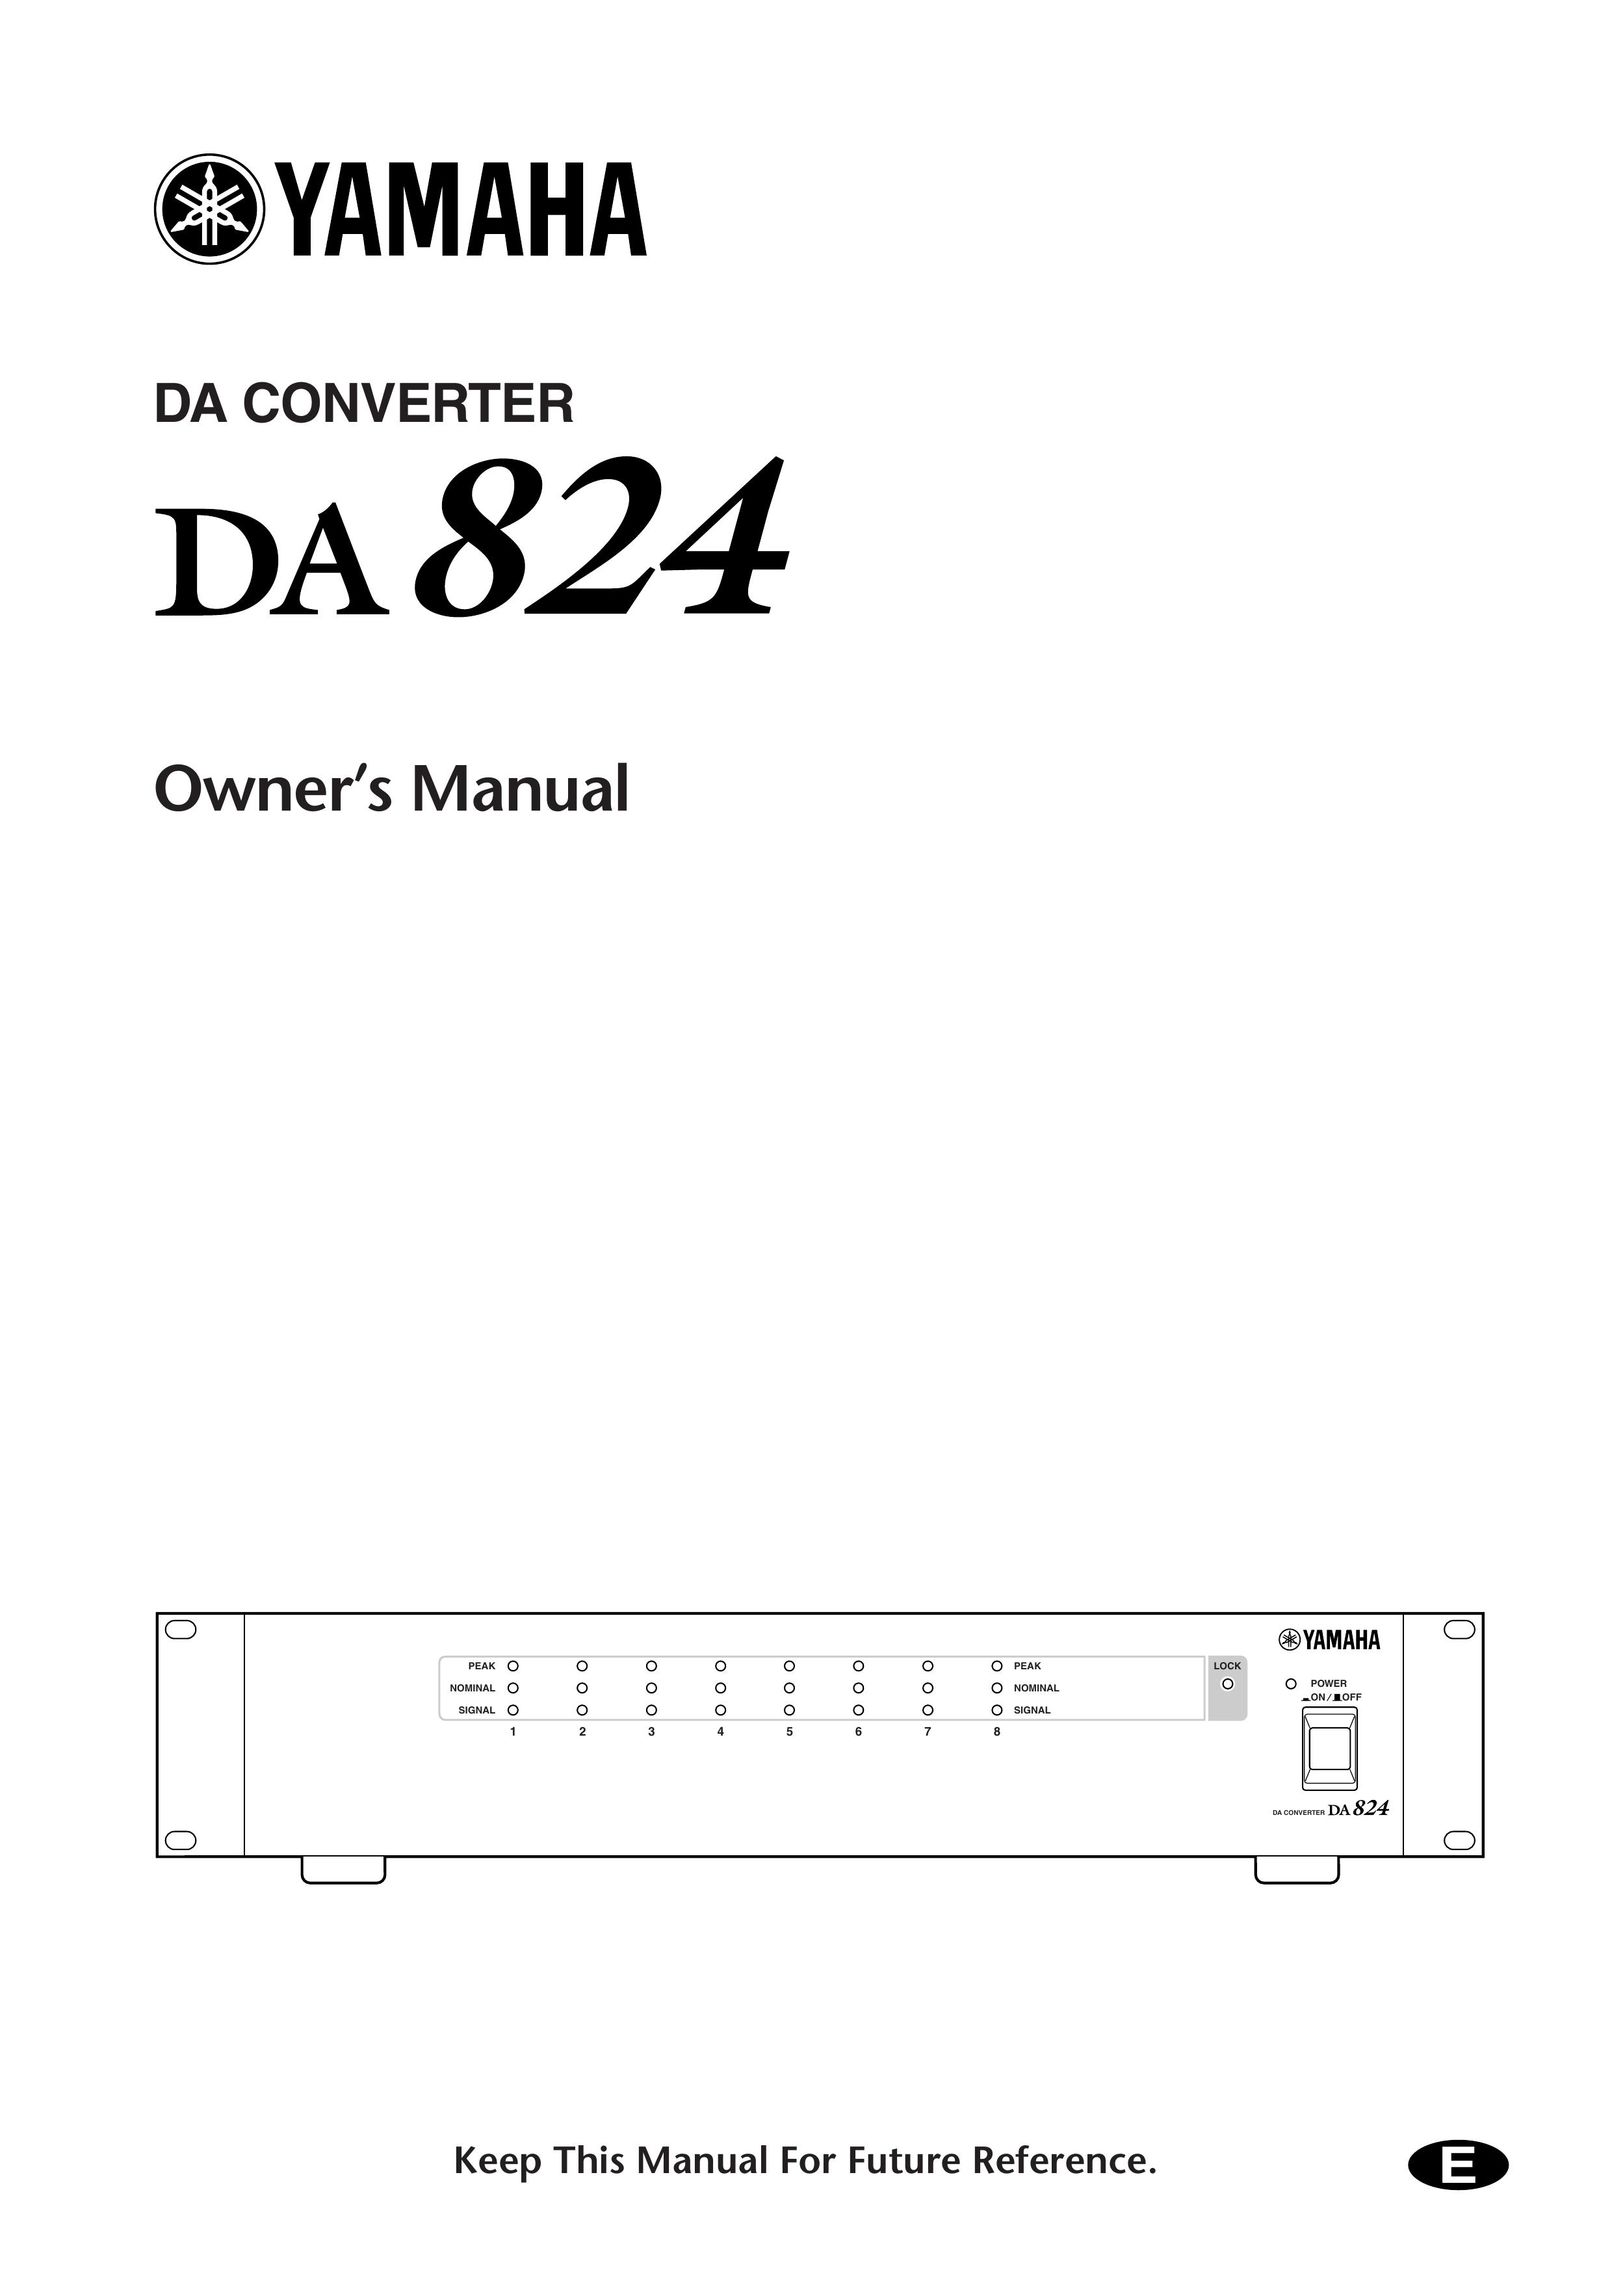 Yamaha DA824 TV Converter Box User Manual